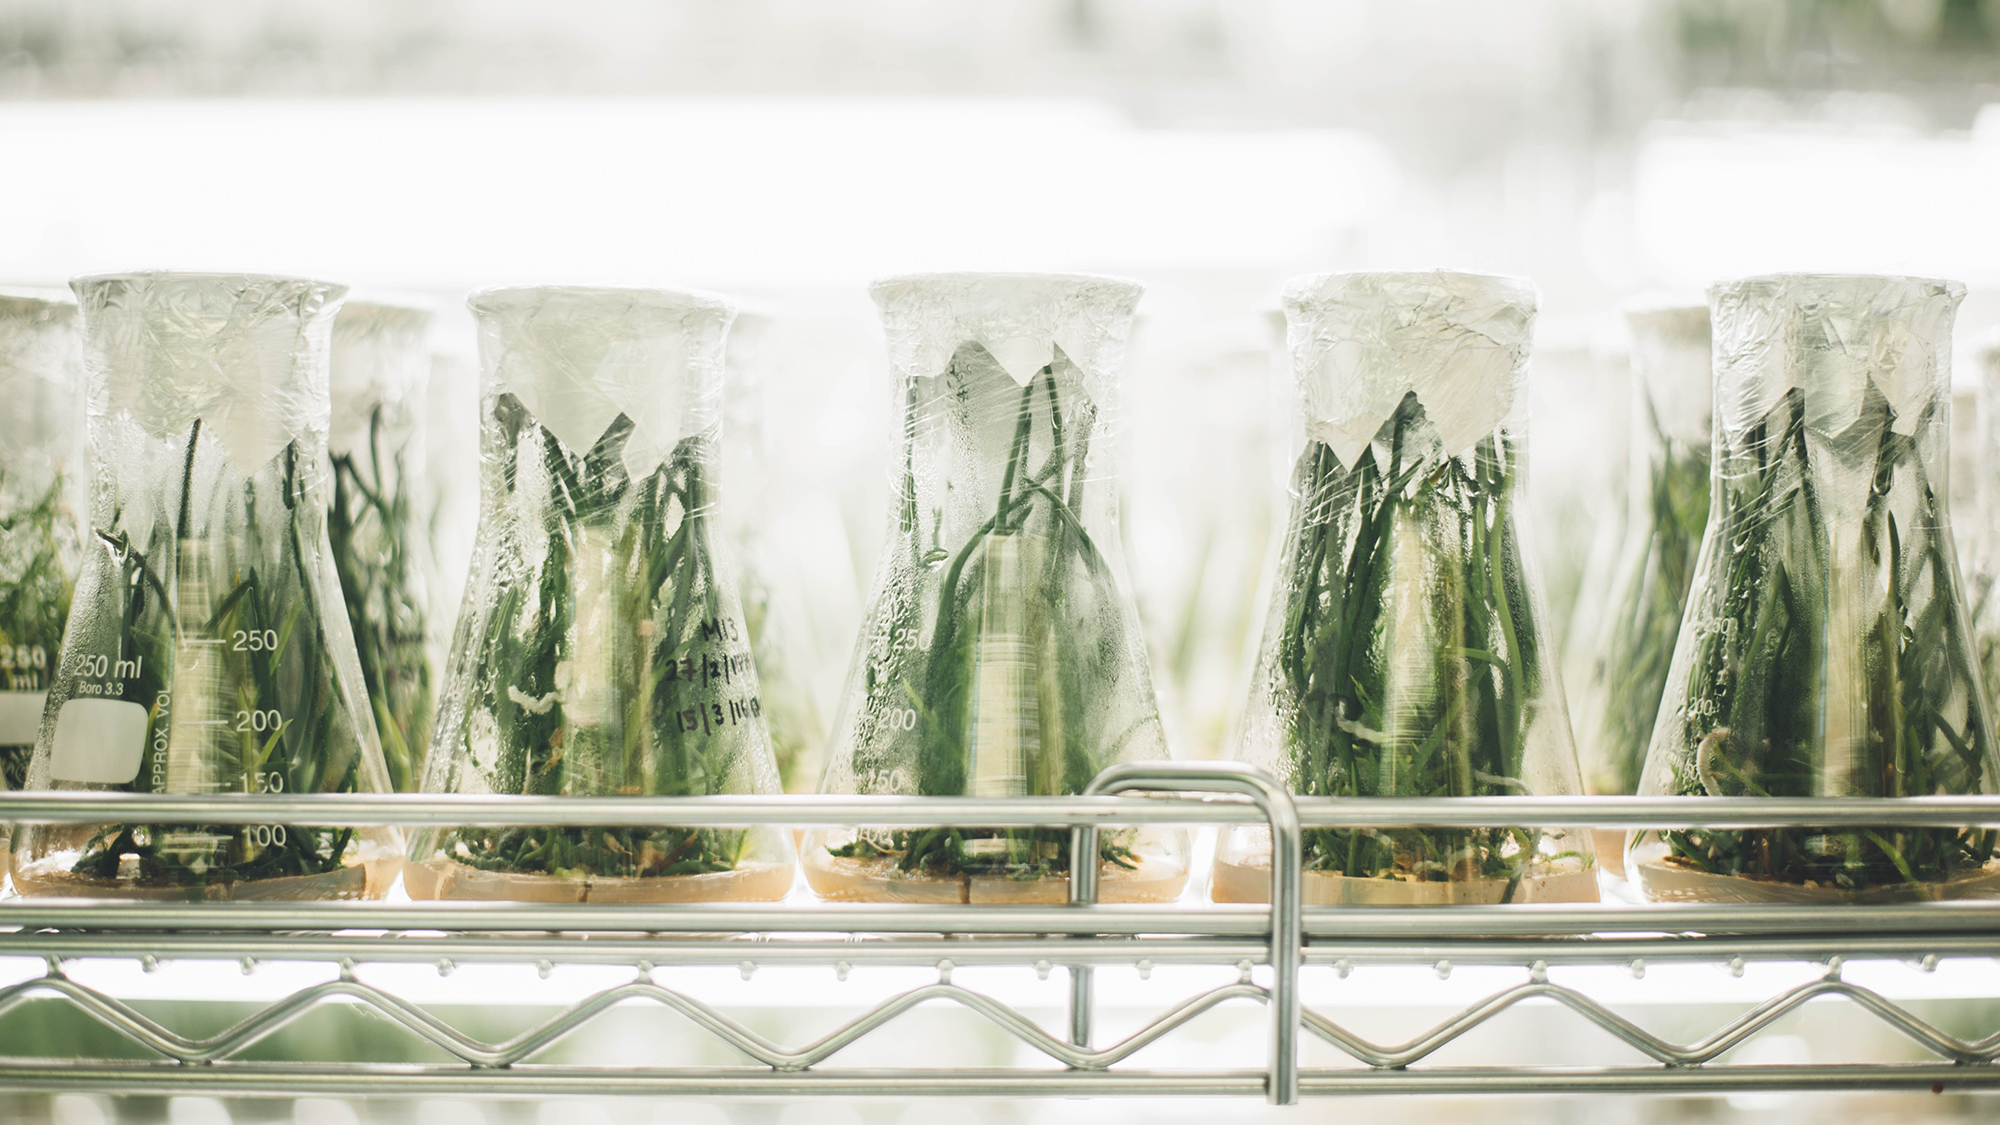 Imatge d'uns matrassos de vidre amb plantes creixent dins